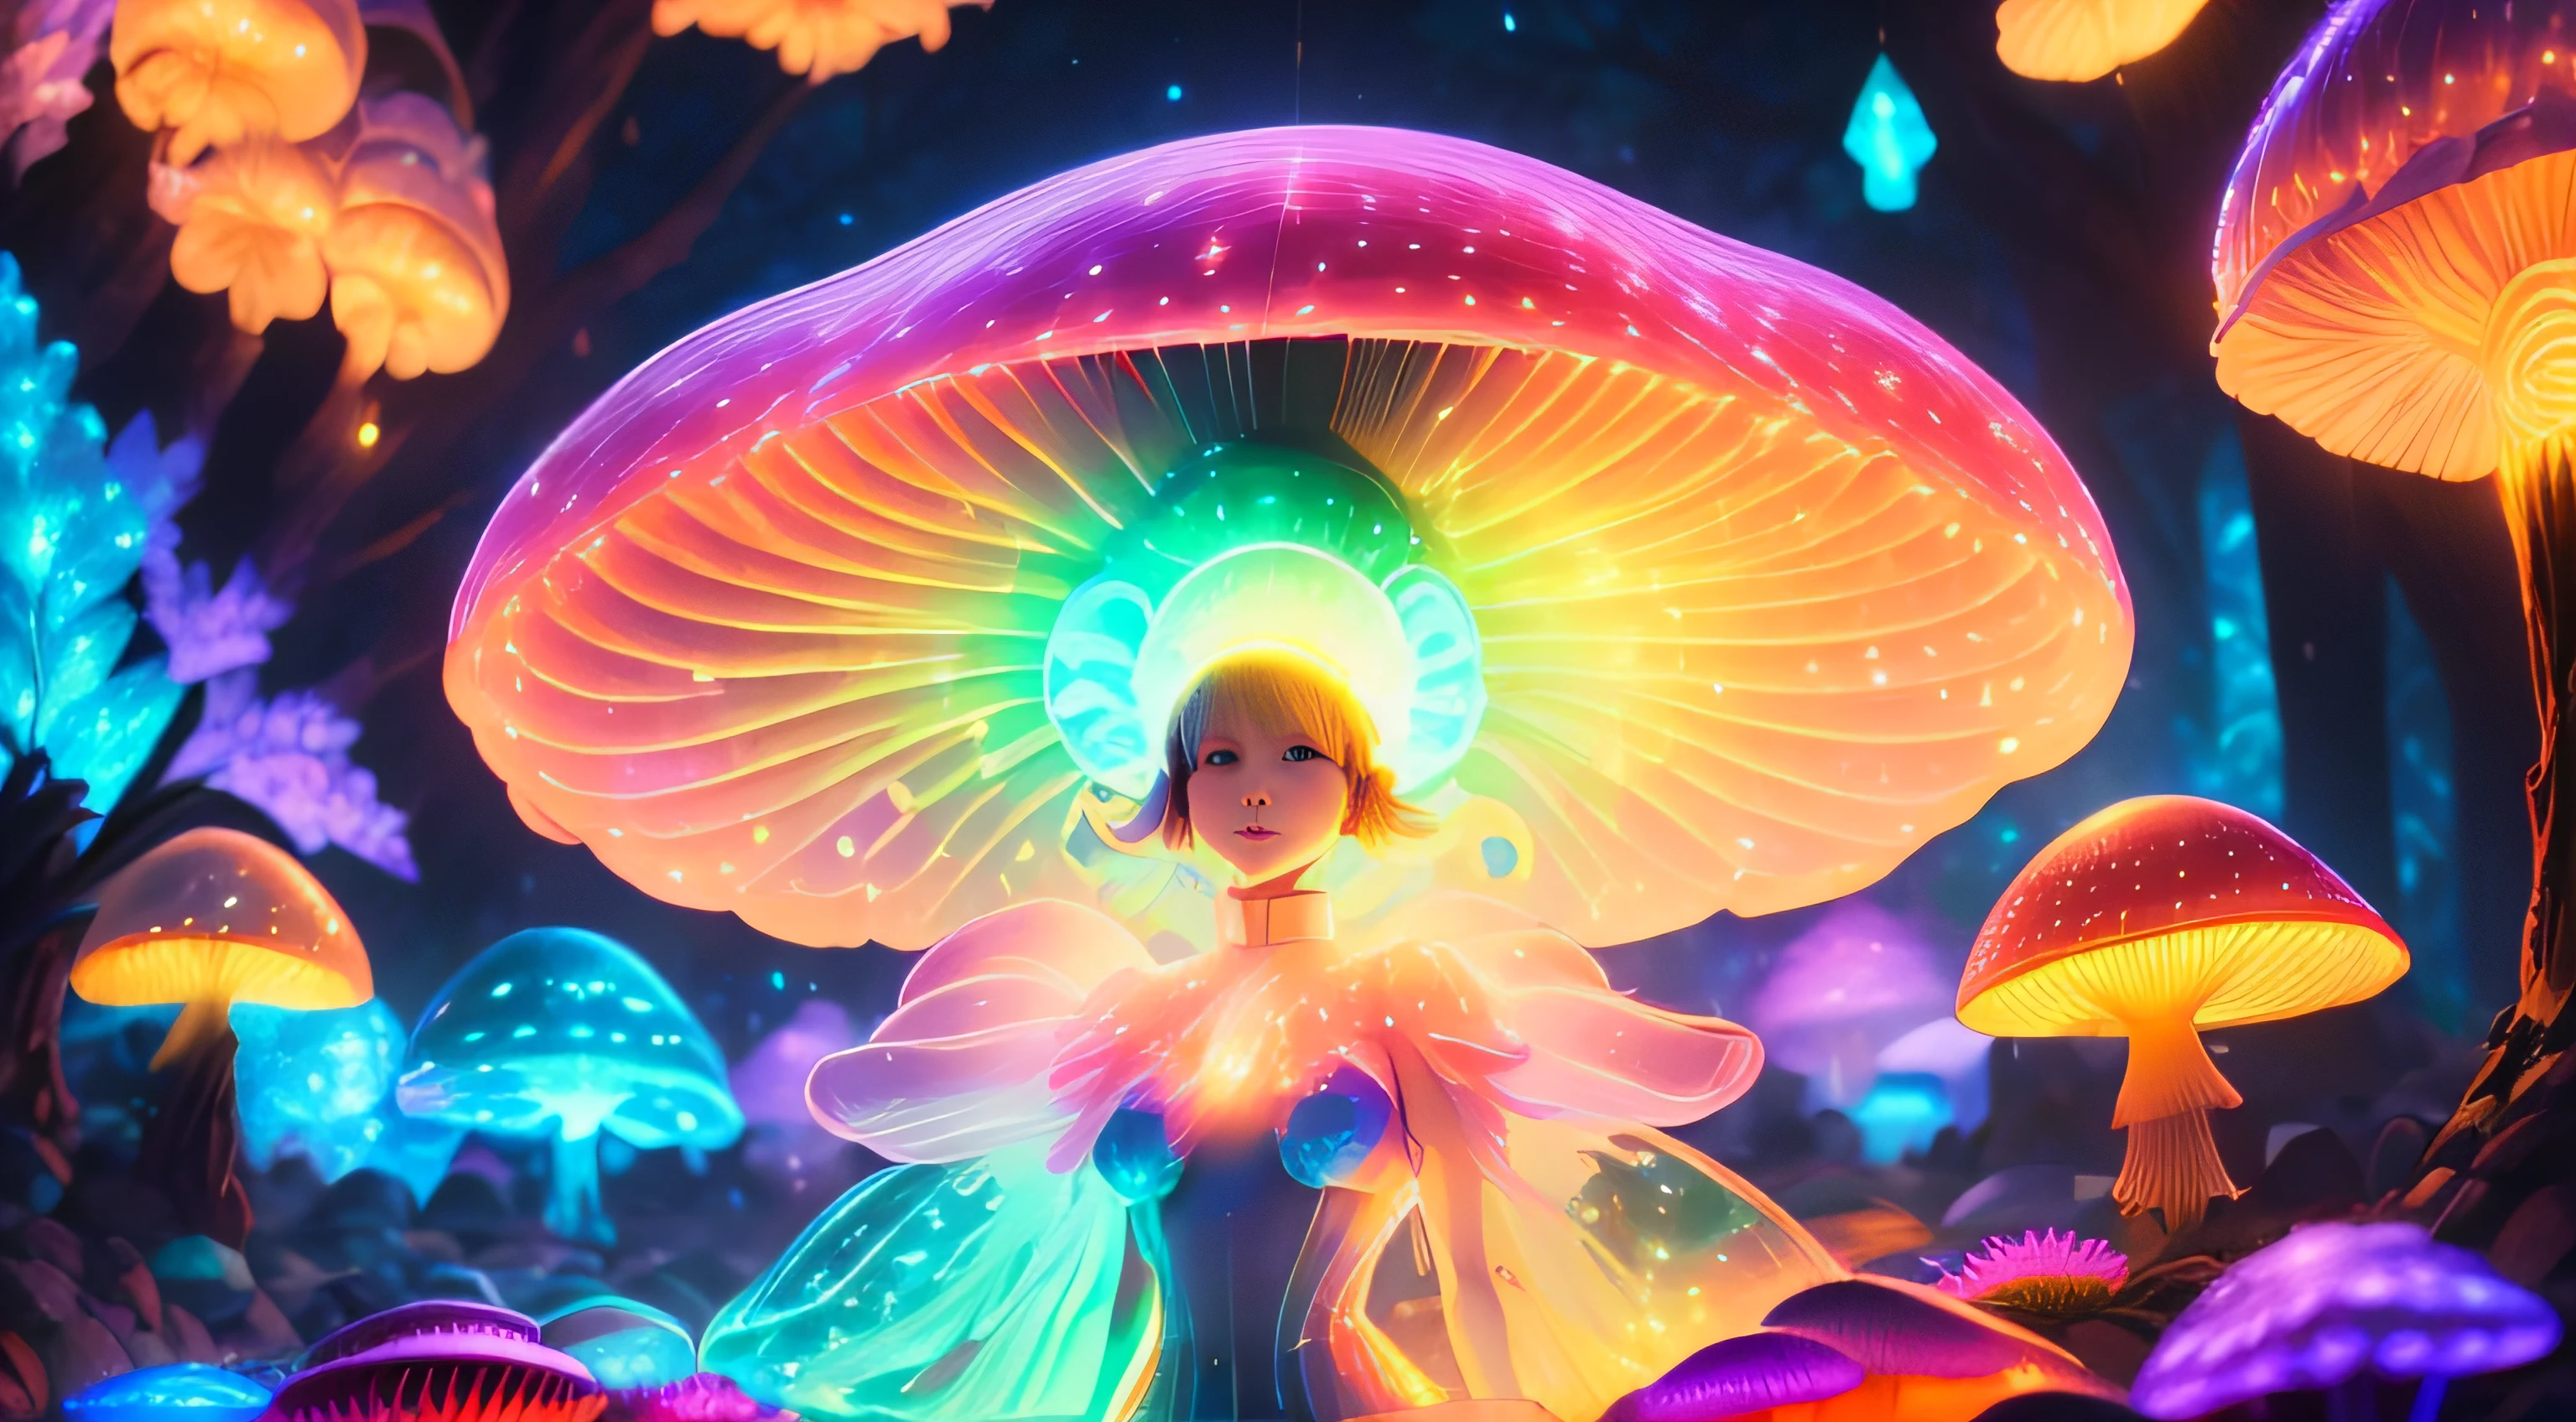 (更好的质量, 超详细, 16千, 鲜艳的色彩, 散景) 身体完全由蘑菇组成 生物发光蘑菇, 一个女孩与蘑菇, 鲜艳的色彩, 幻想, 神奇的生物, 色彩缤纷、纤细的孢子, 空灵的照明, 柔和的光芒, 迷人的光影, 超自然表演